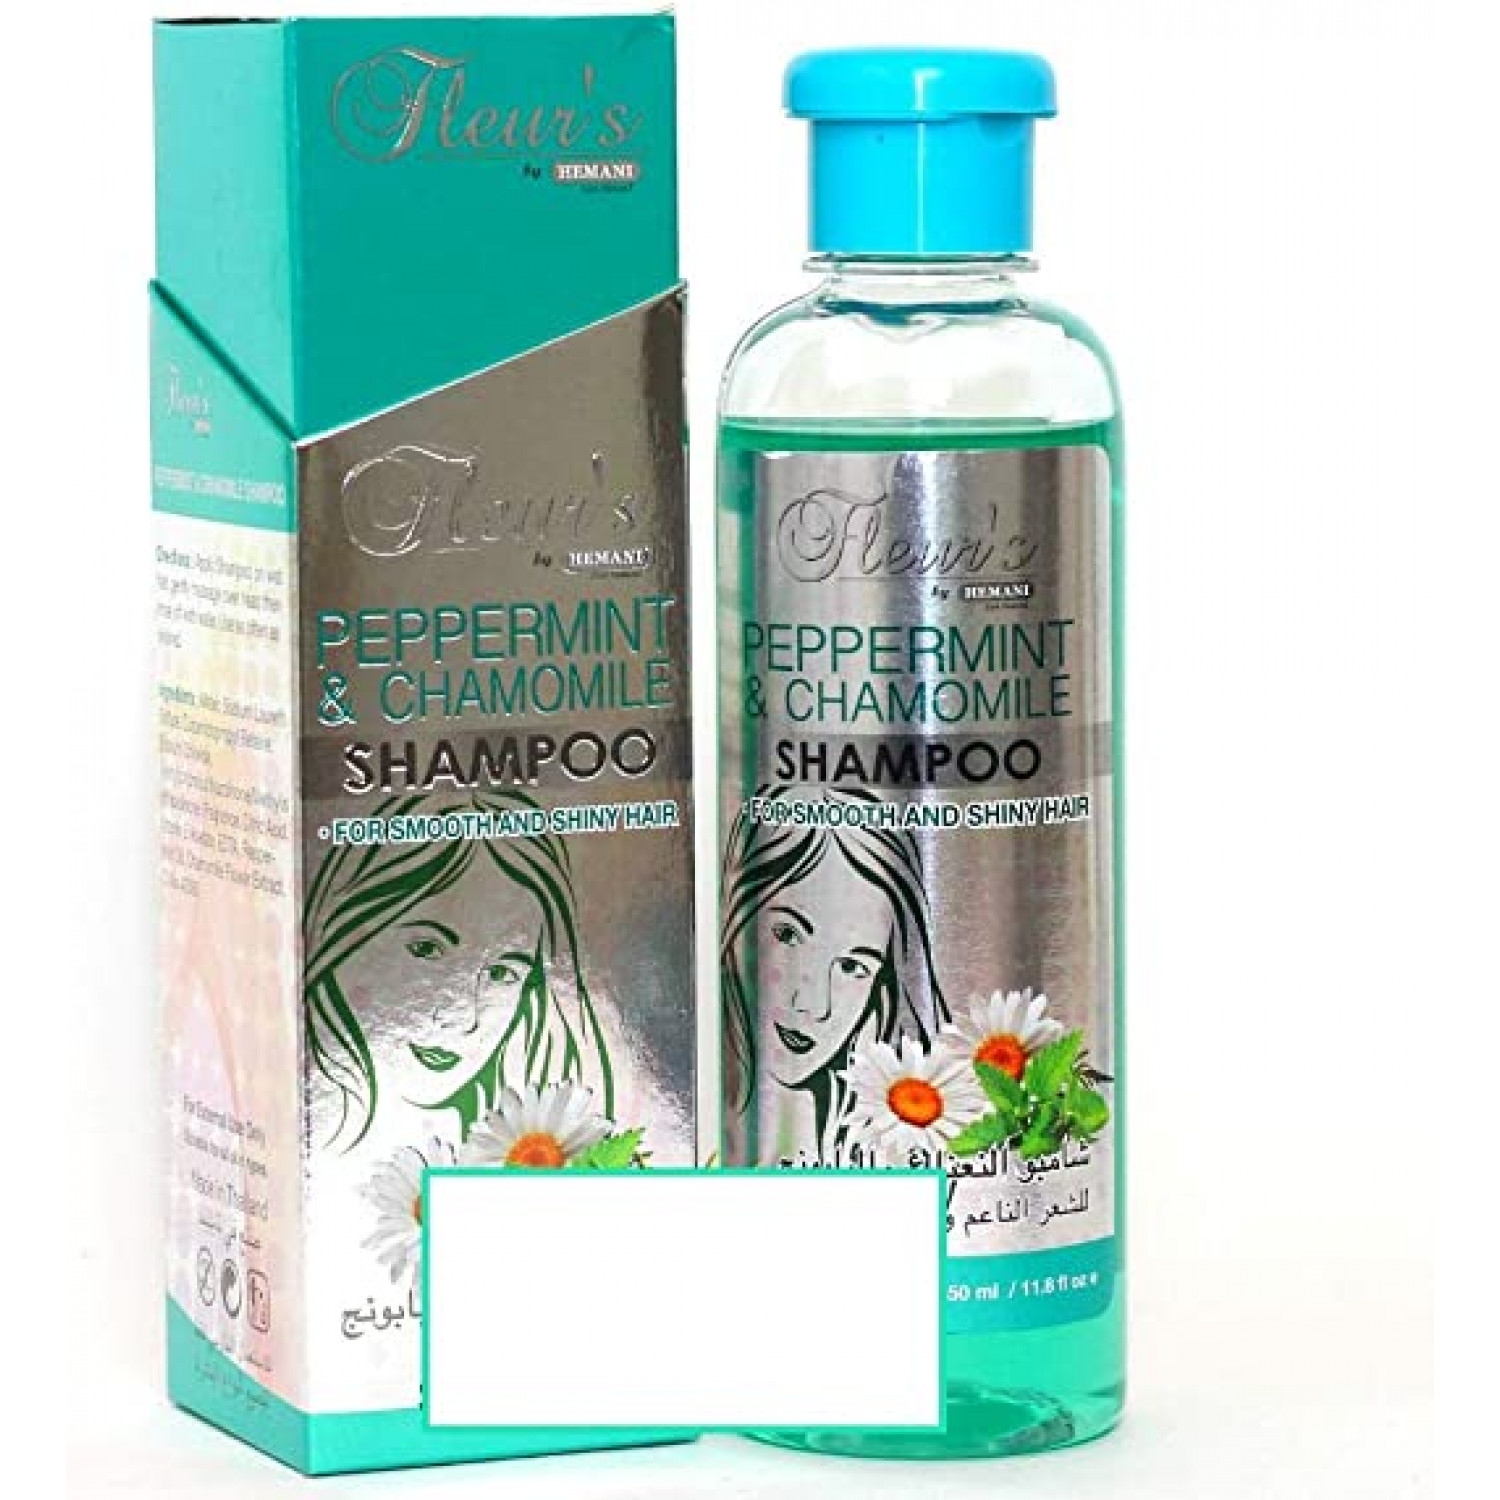 Fleur's PEPPERMINT & CHAMOMILE Shampoo, Hemani (Шампунь МЯТА И РОМАШКА, для гладкости и блеска волос, Хемани), 350 мл.